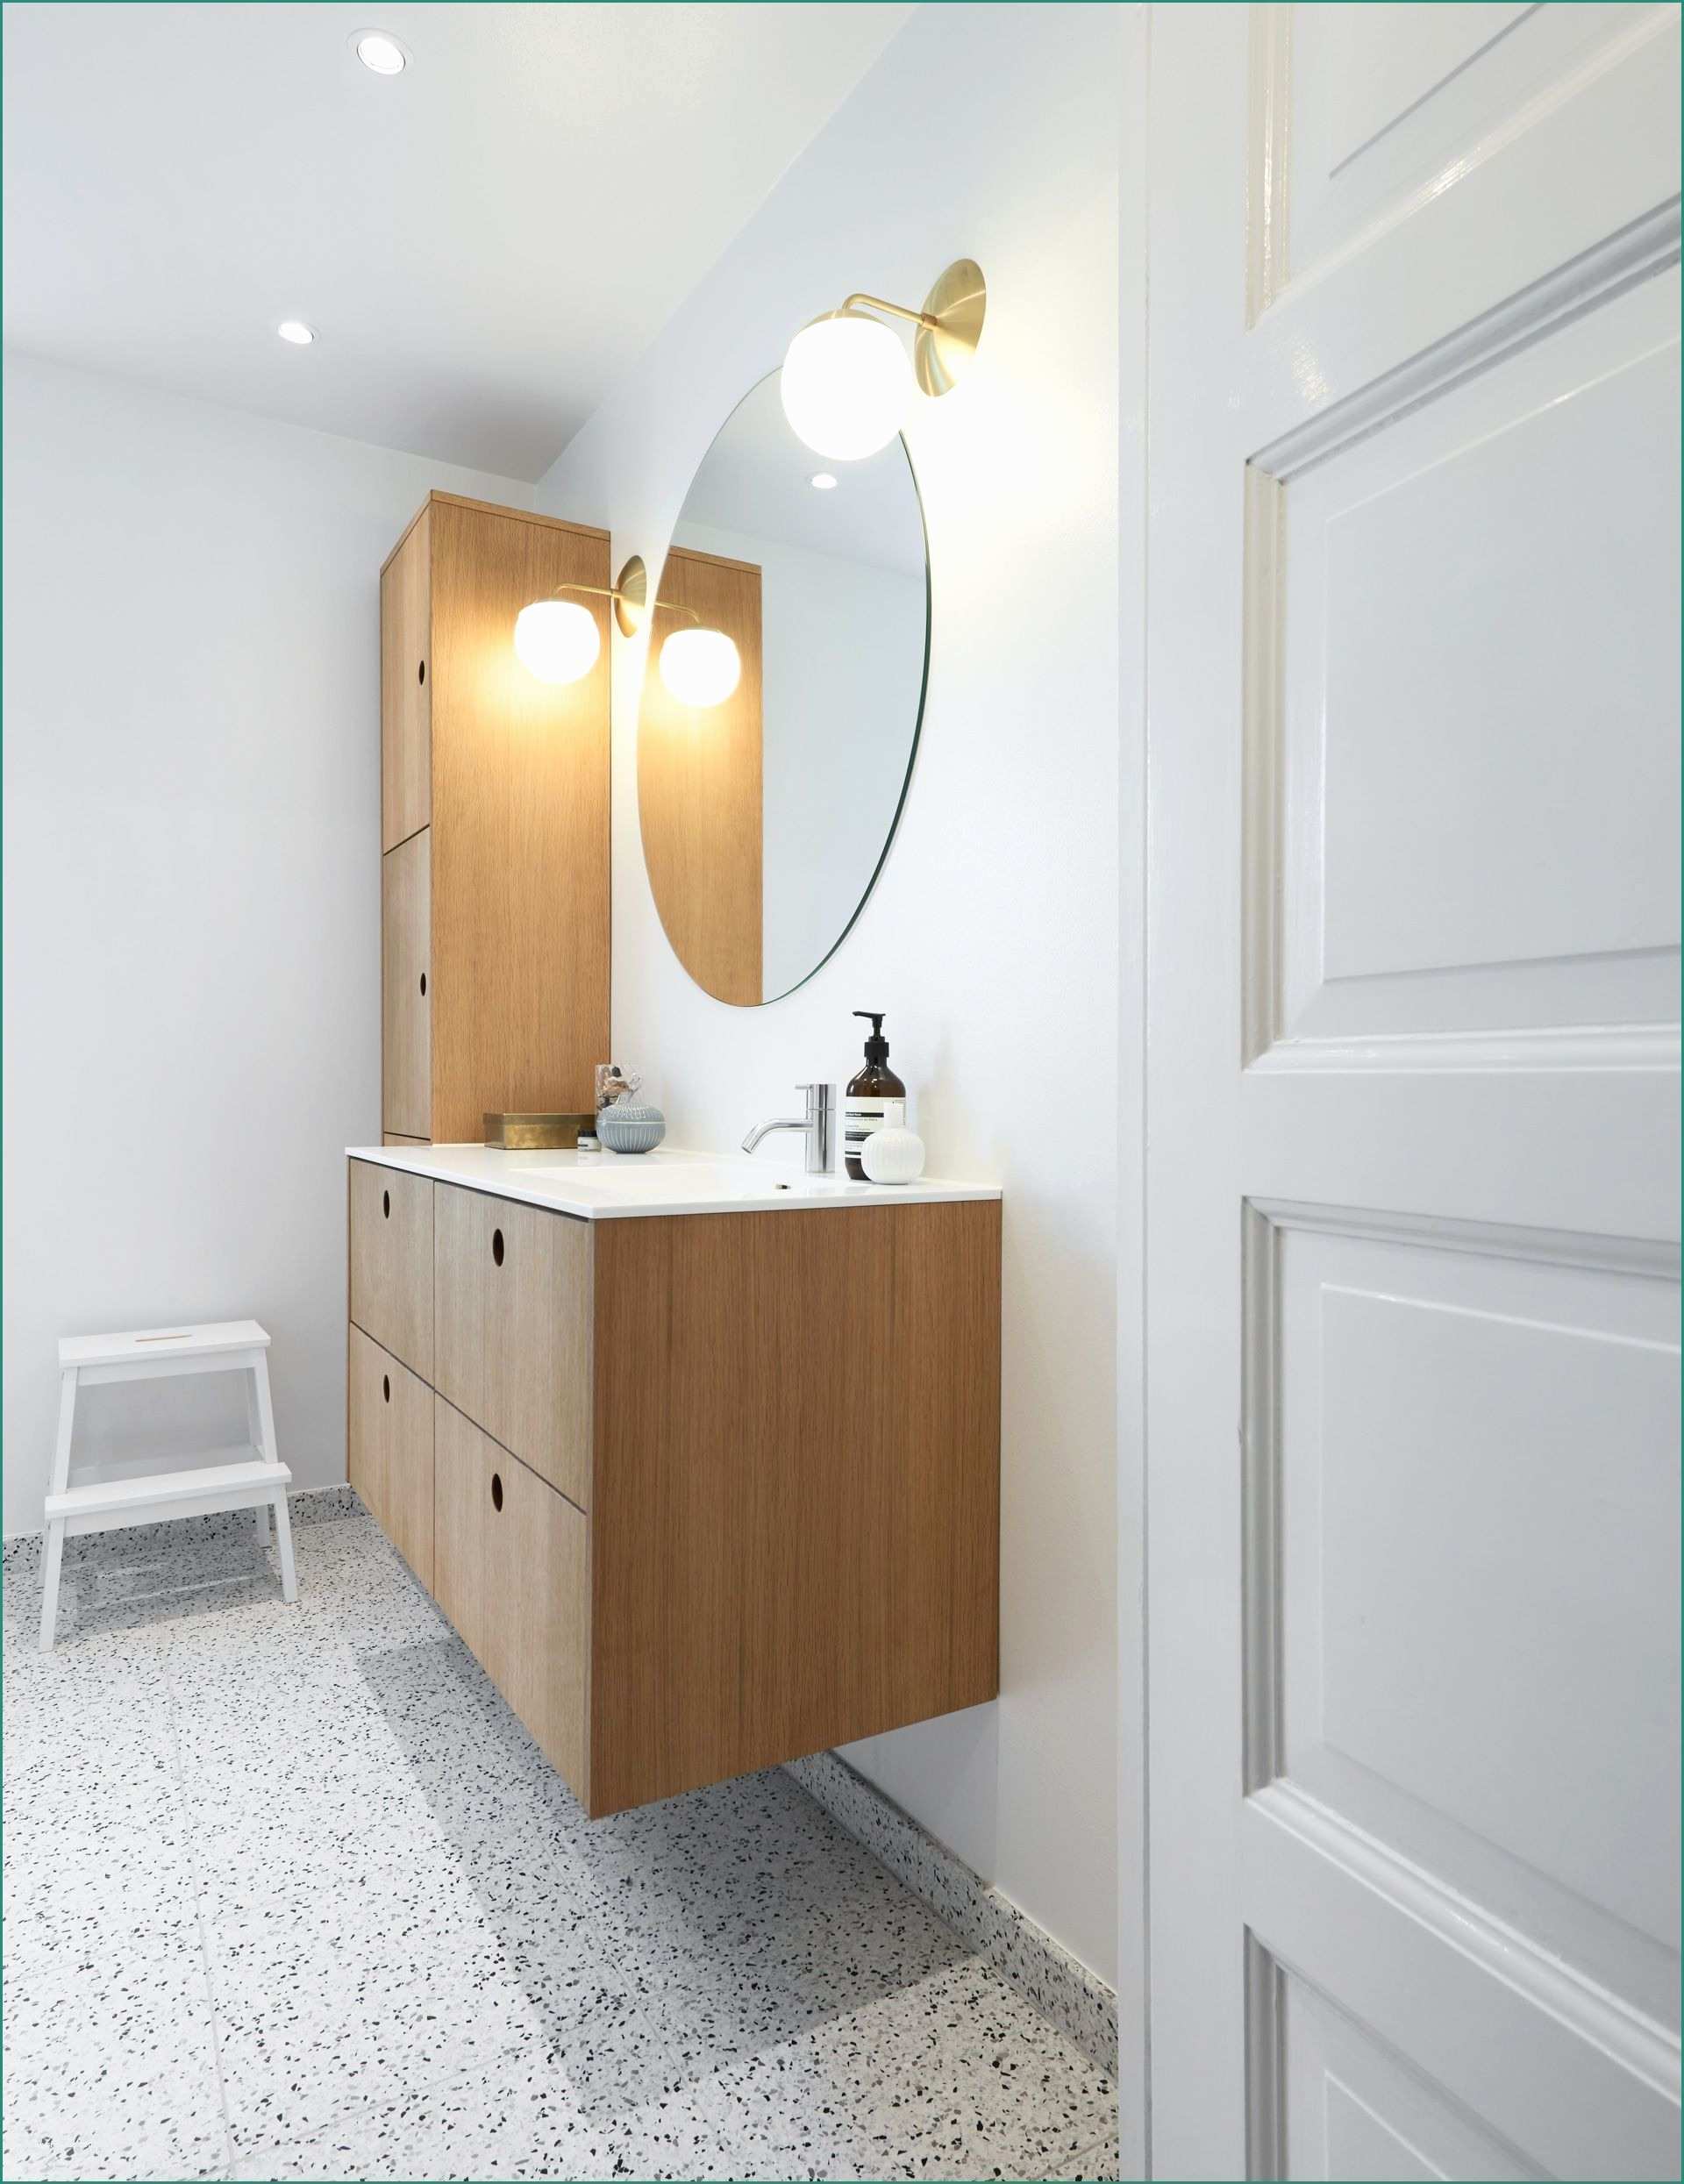 Pavimento Flottante Ikea E Limfjordsvej In Vanl¸se Denmark Bathrooms Pinterest